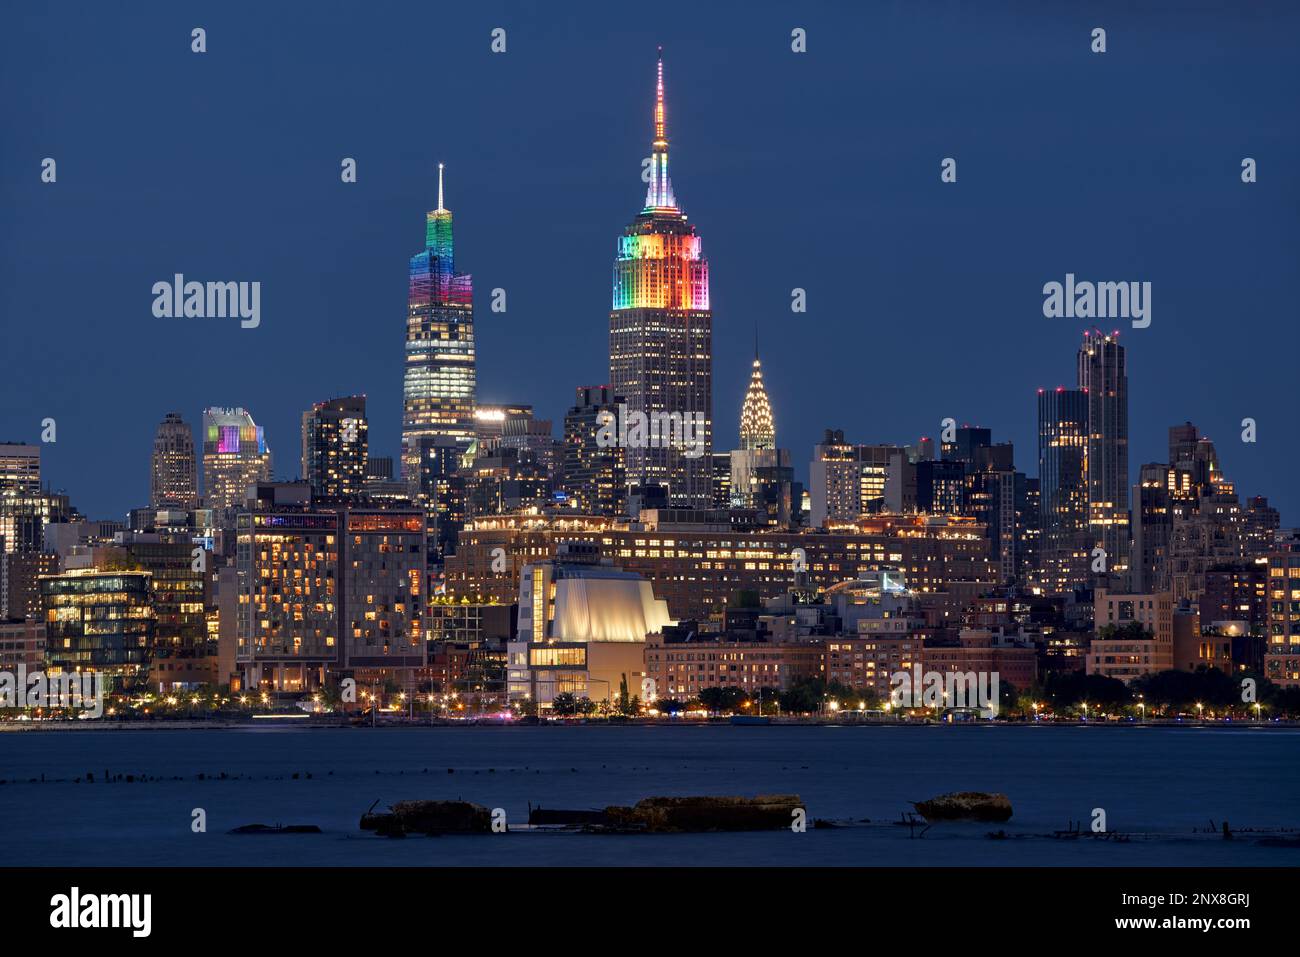 New York. L'Empire State Building et un gratte-ciel Venderbilt illuminés de couleurs arc-en-ciel pour la semaine de la fierté gay LGBTQ+. Midtown, Manhattan Banque D'Images